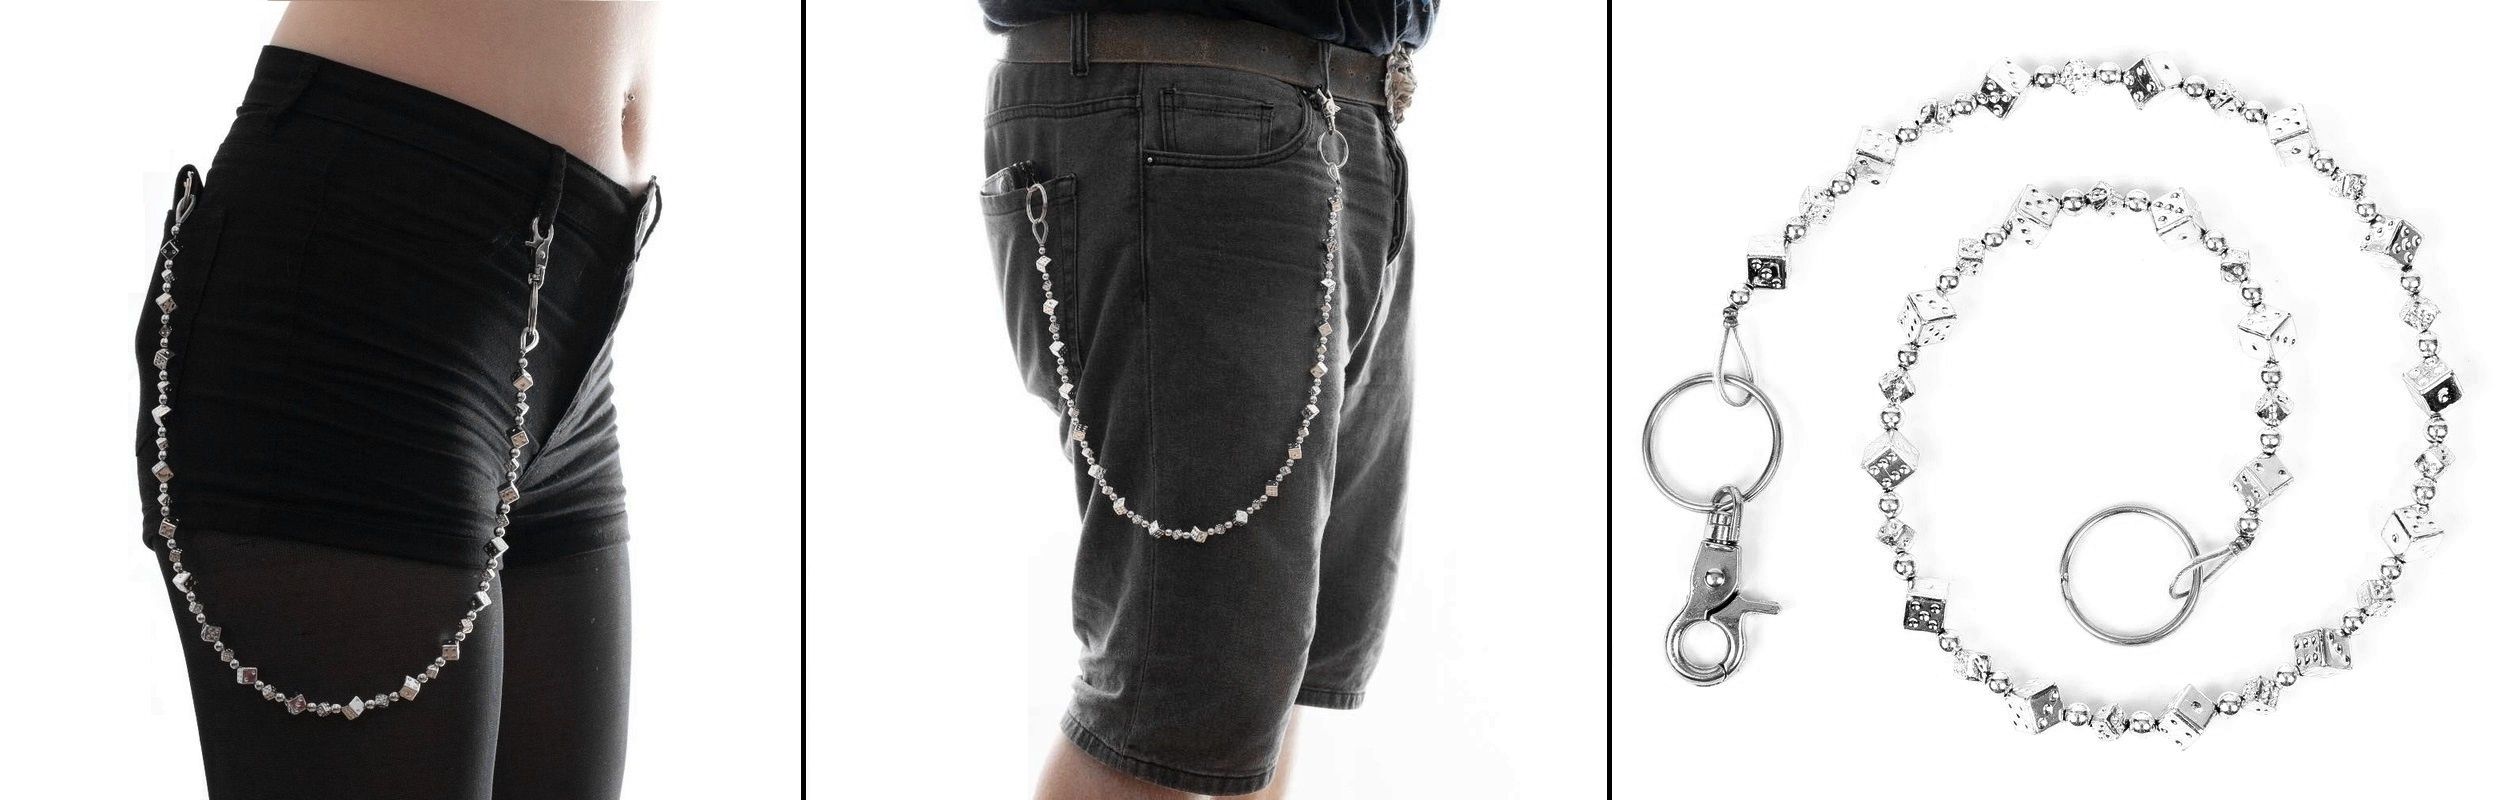 Řetěz na kalhoty se stříbrnými kostkami